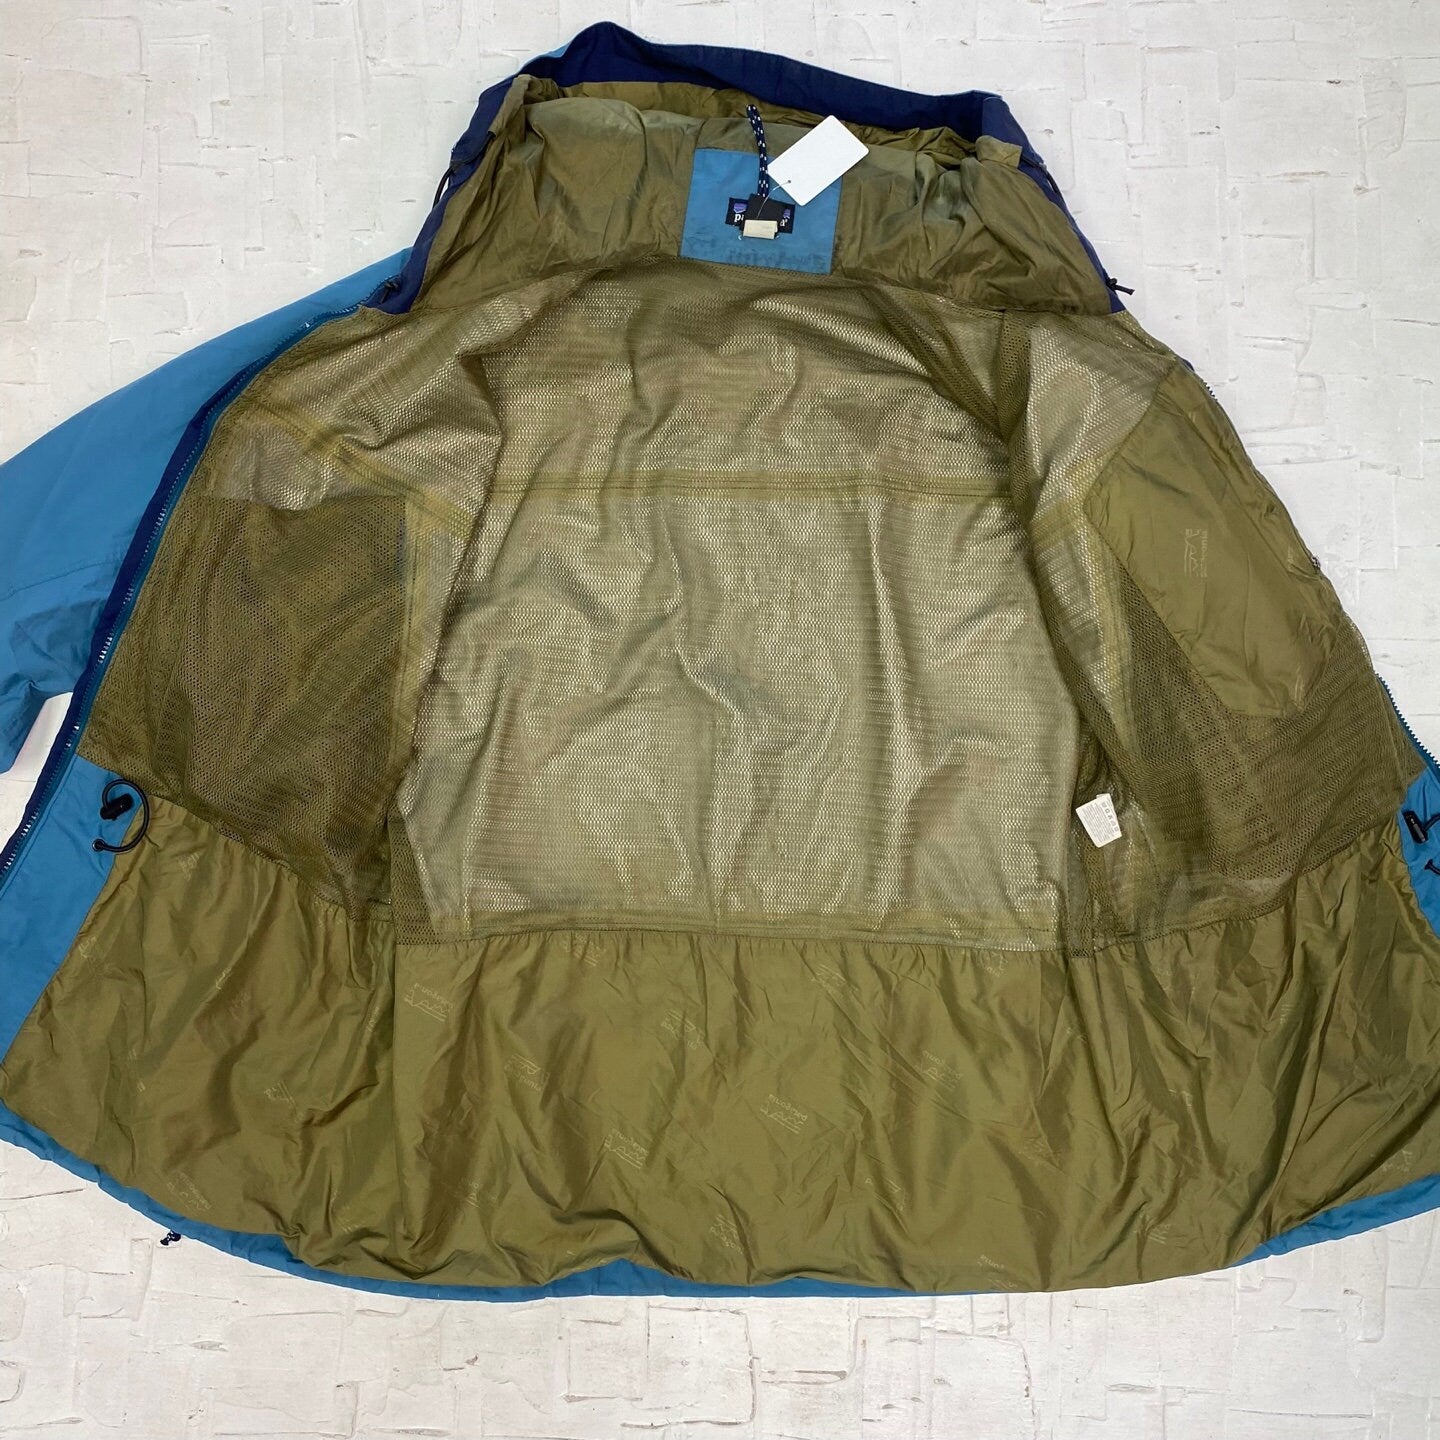 Vintage Patagonia Windbreaker Jacket with Mesh Lining and Hood | Vintage Jacket | Vintage Patagonia | Patagonia Jacket | Size L | SKU M-2127